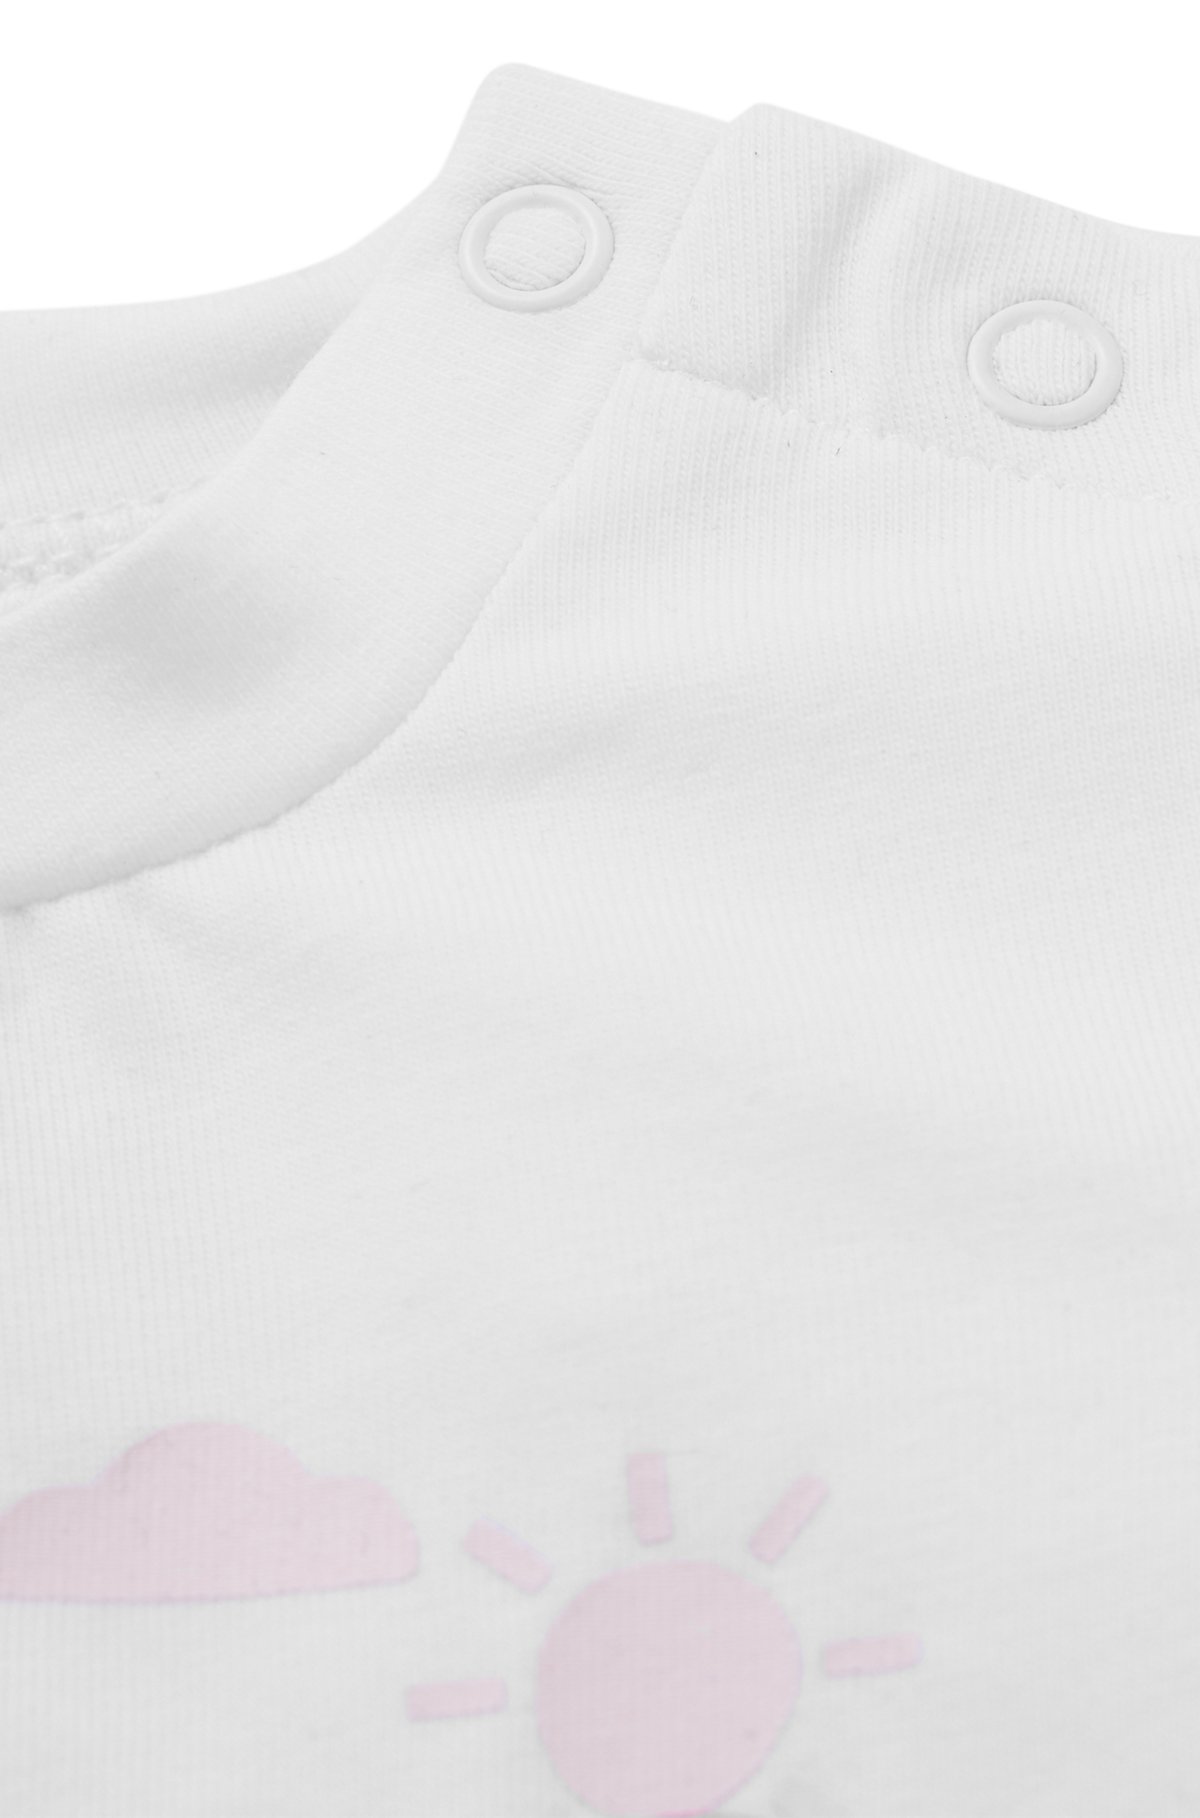 Camiseta para bebé de algodón elástico con logo estampado, Blanco